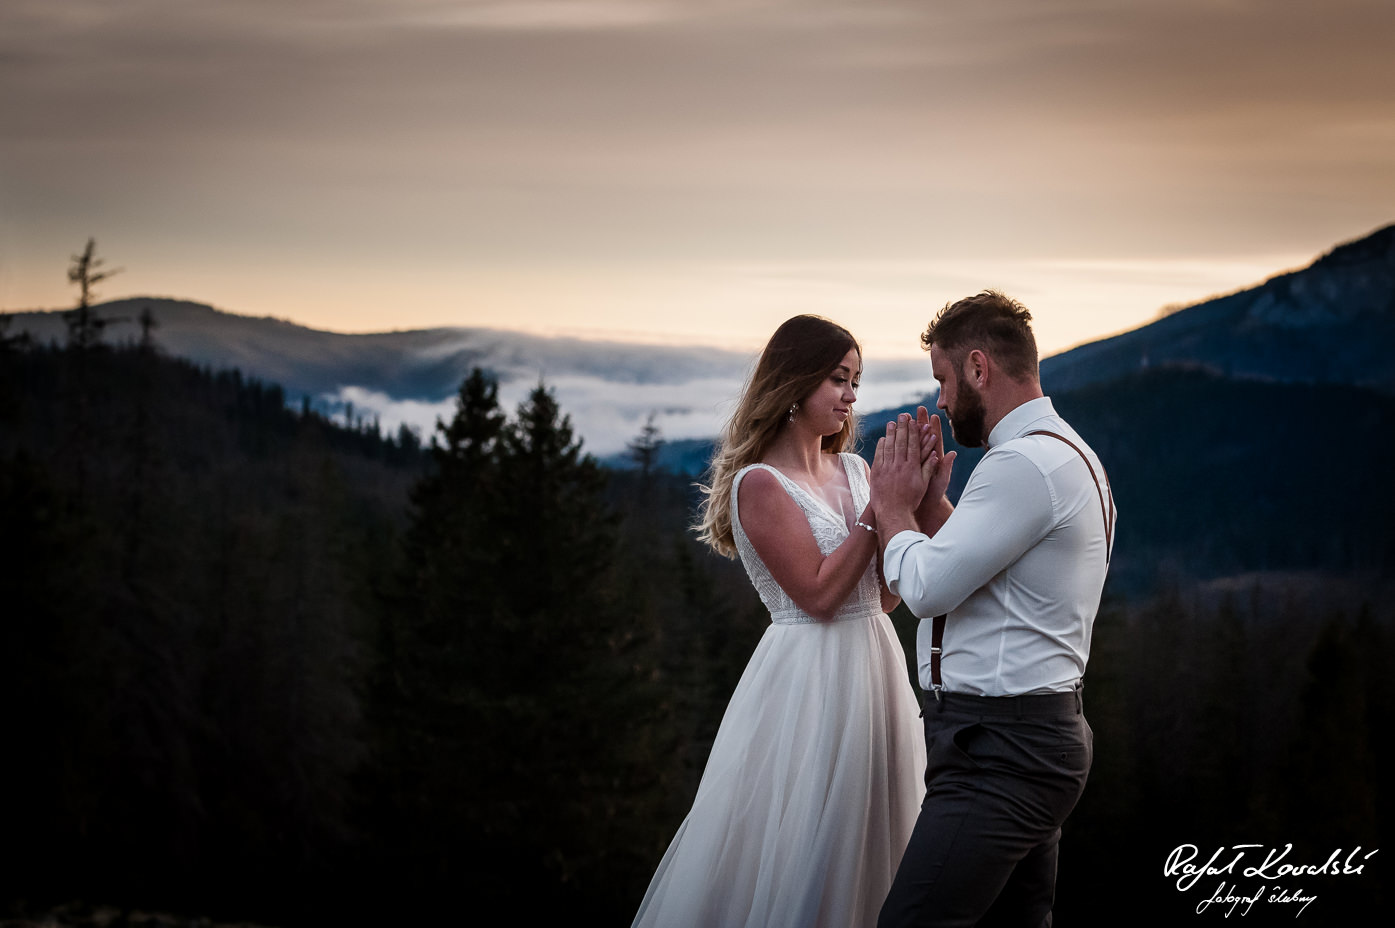 Sesja ślubna w Tatrach - dobrze jeśli jest ktoś, kto ogrzeje zmarznięte dłonie